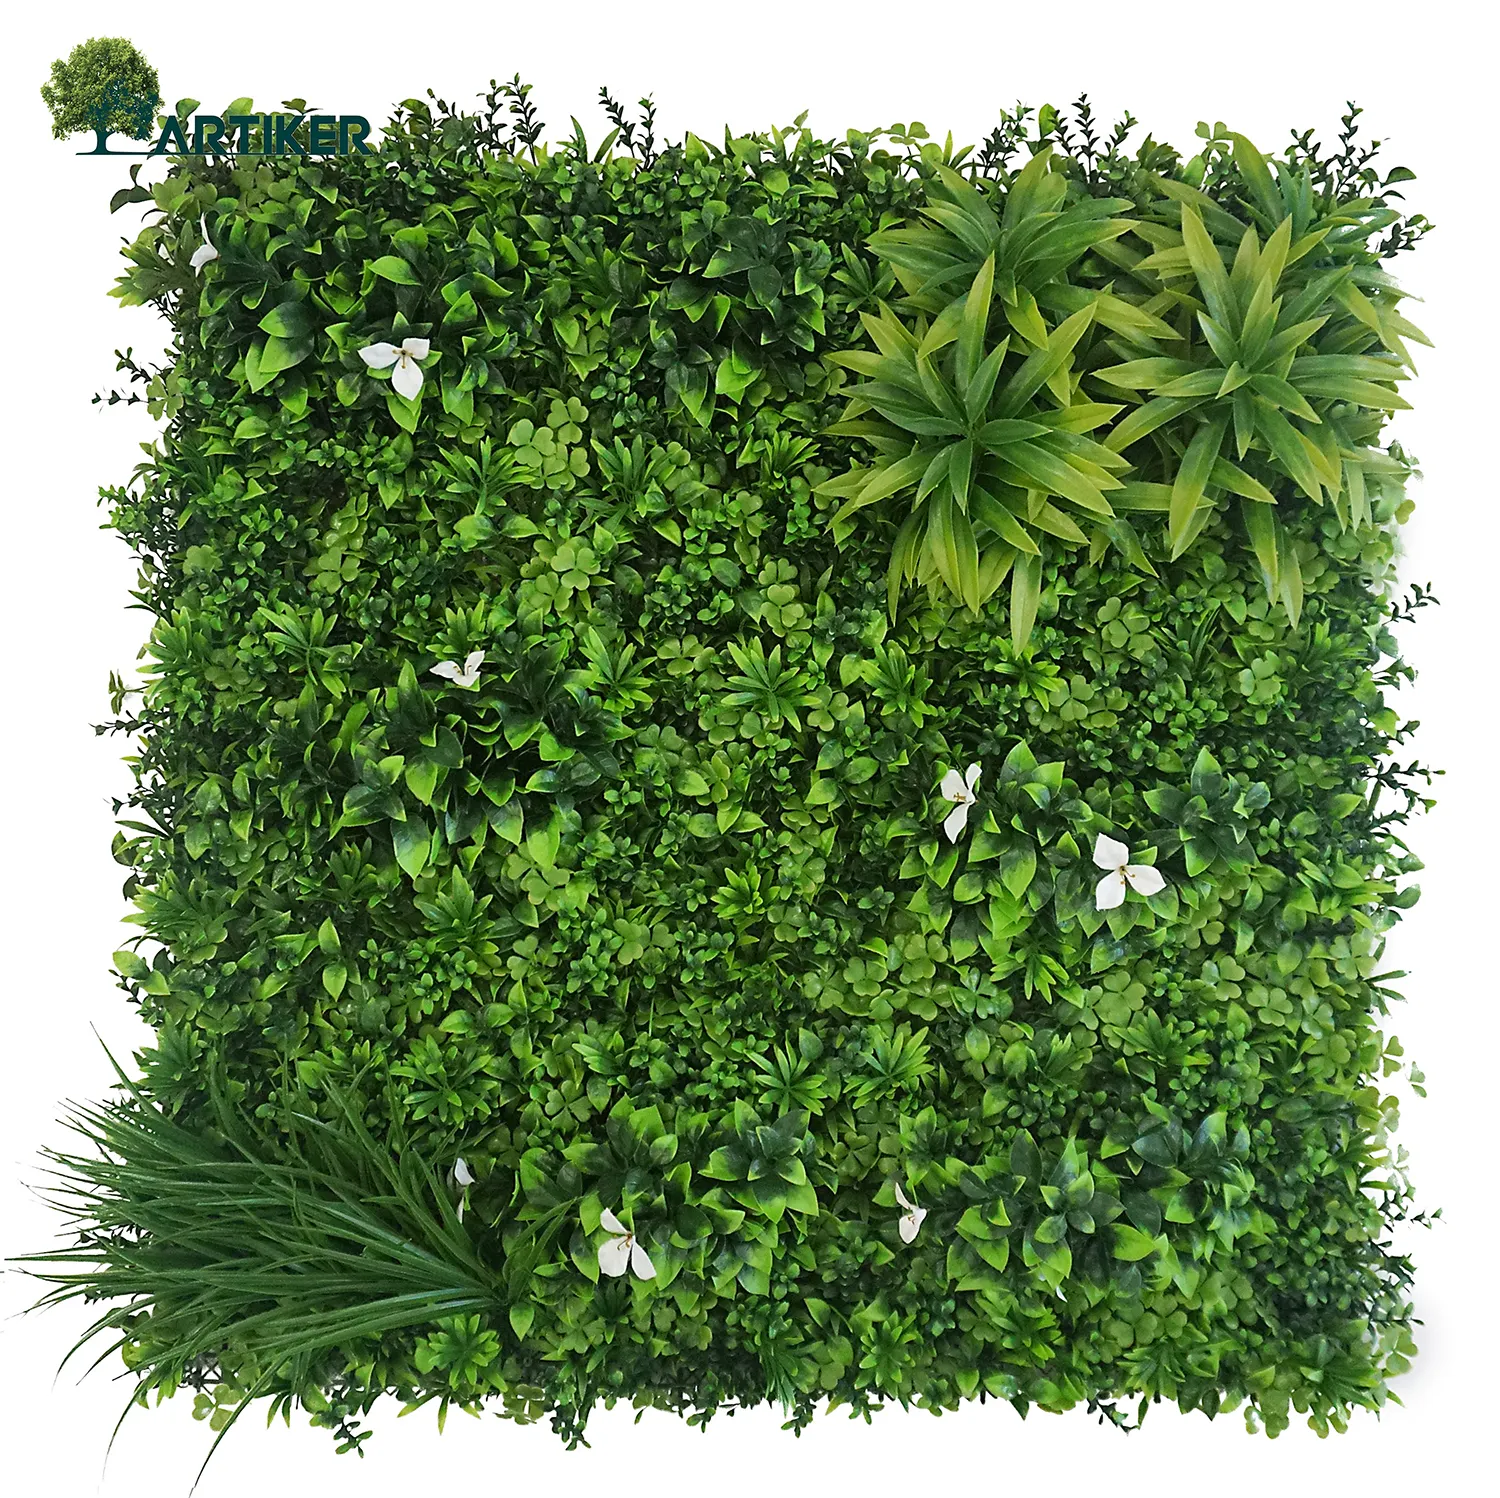 Décoration de plantes artificielles pour mur vert d'extérieur Décoration d'herbe et de fleurs en plastique certifiées UV Feuillage artificiel Art mural